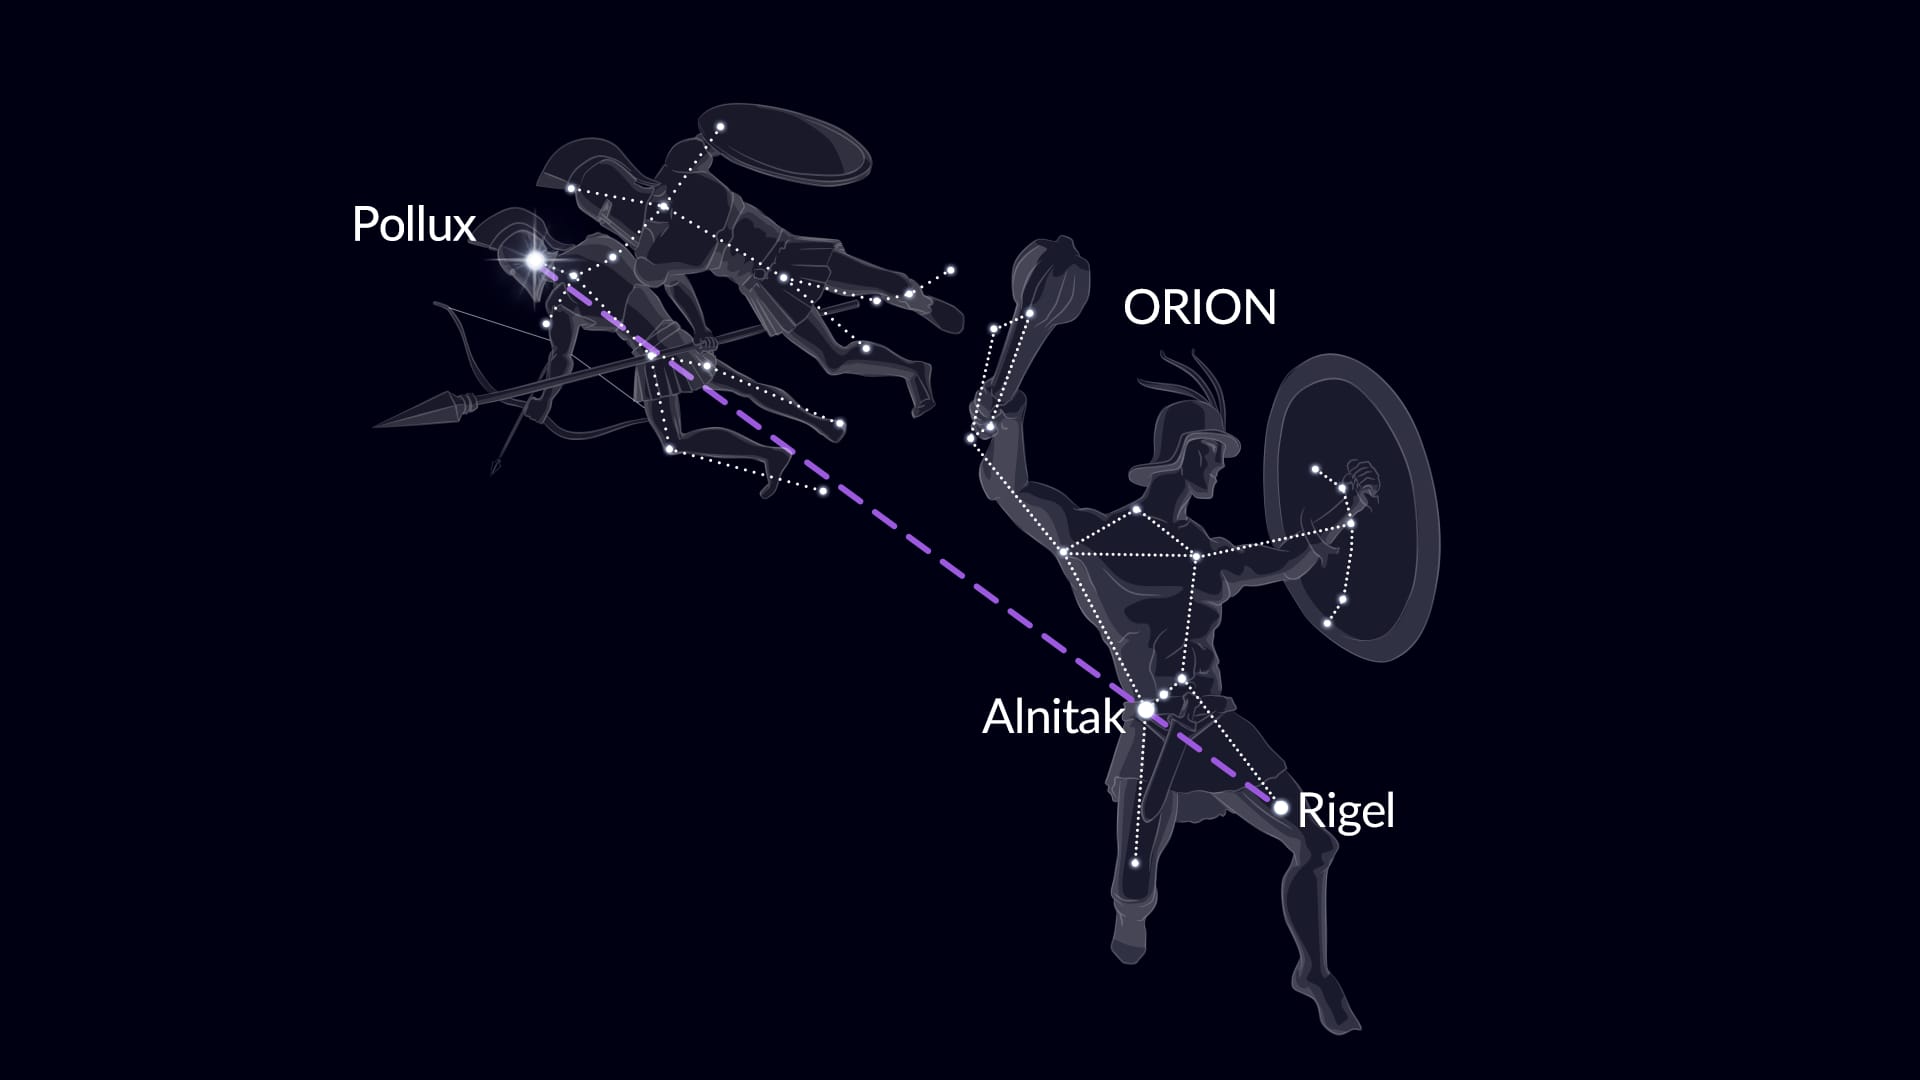 Vind Pollux via Orion